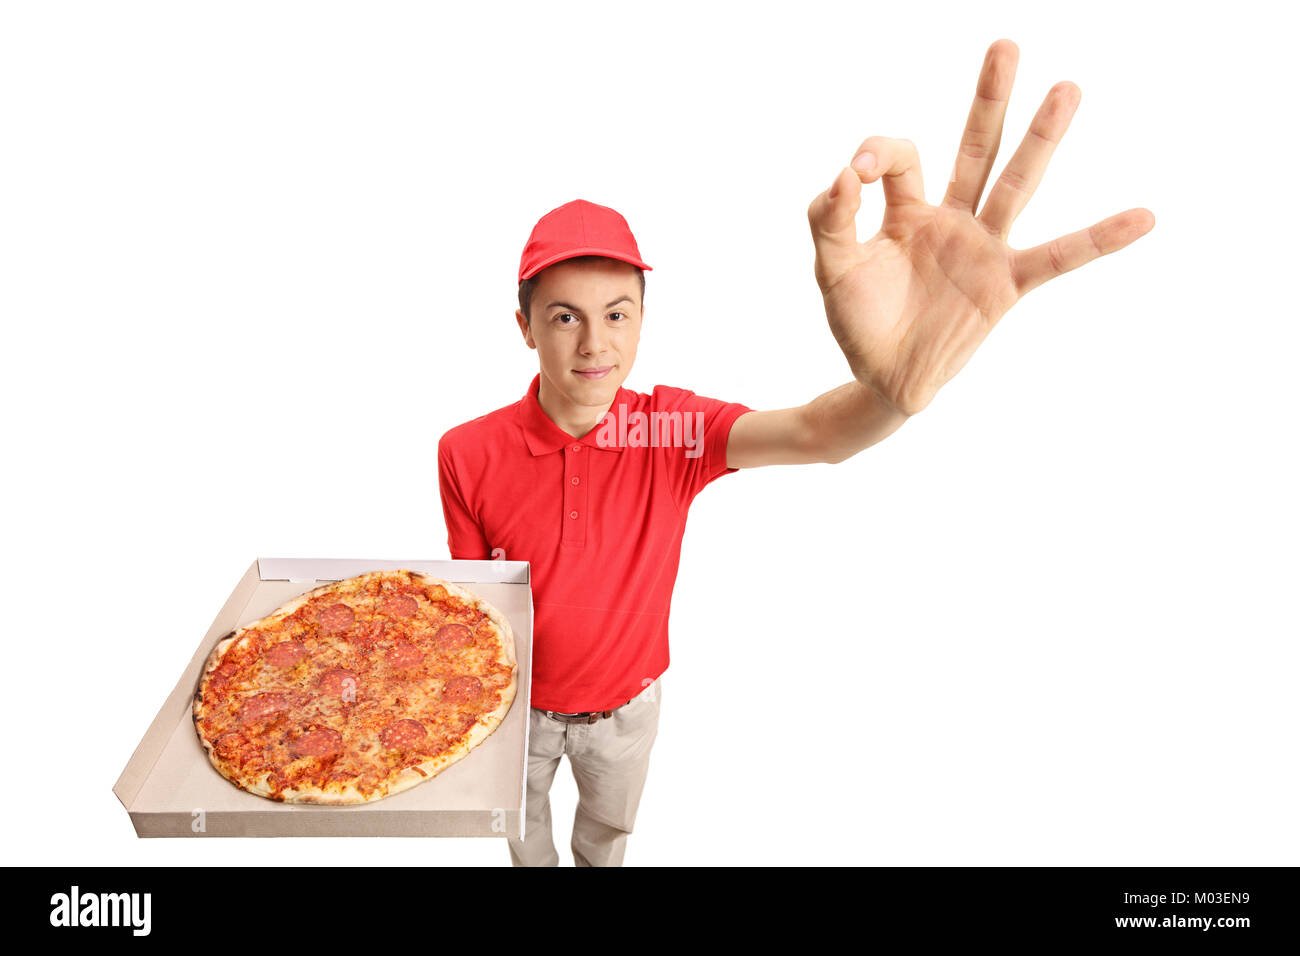 эй наконец то я могу попробовать пиццу путтанеска с соусом фото 108